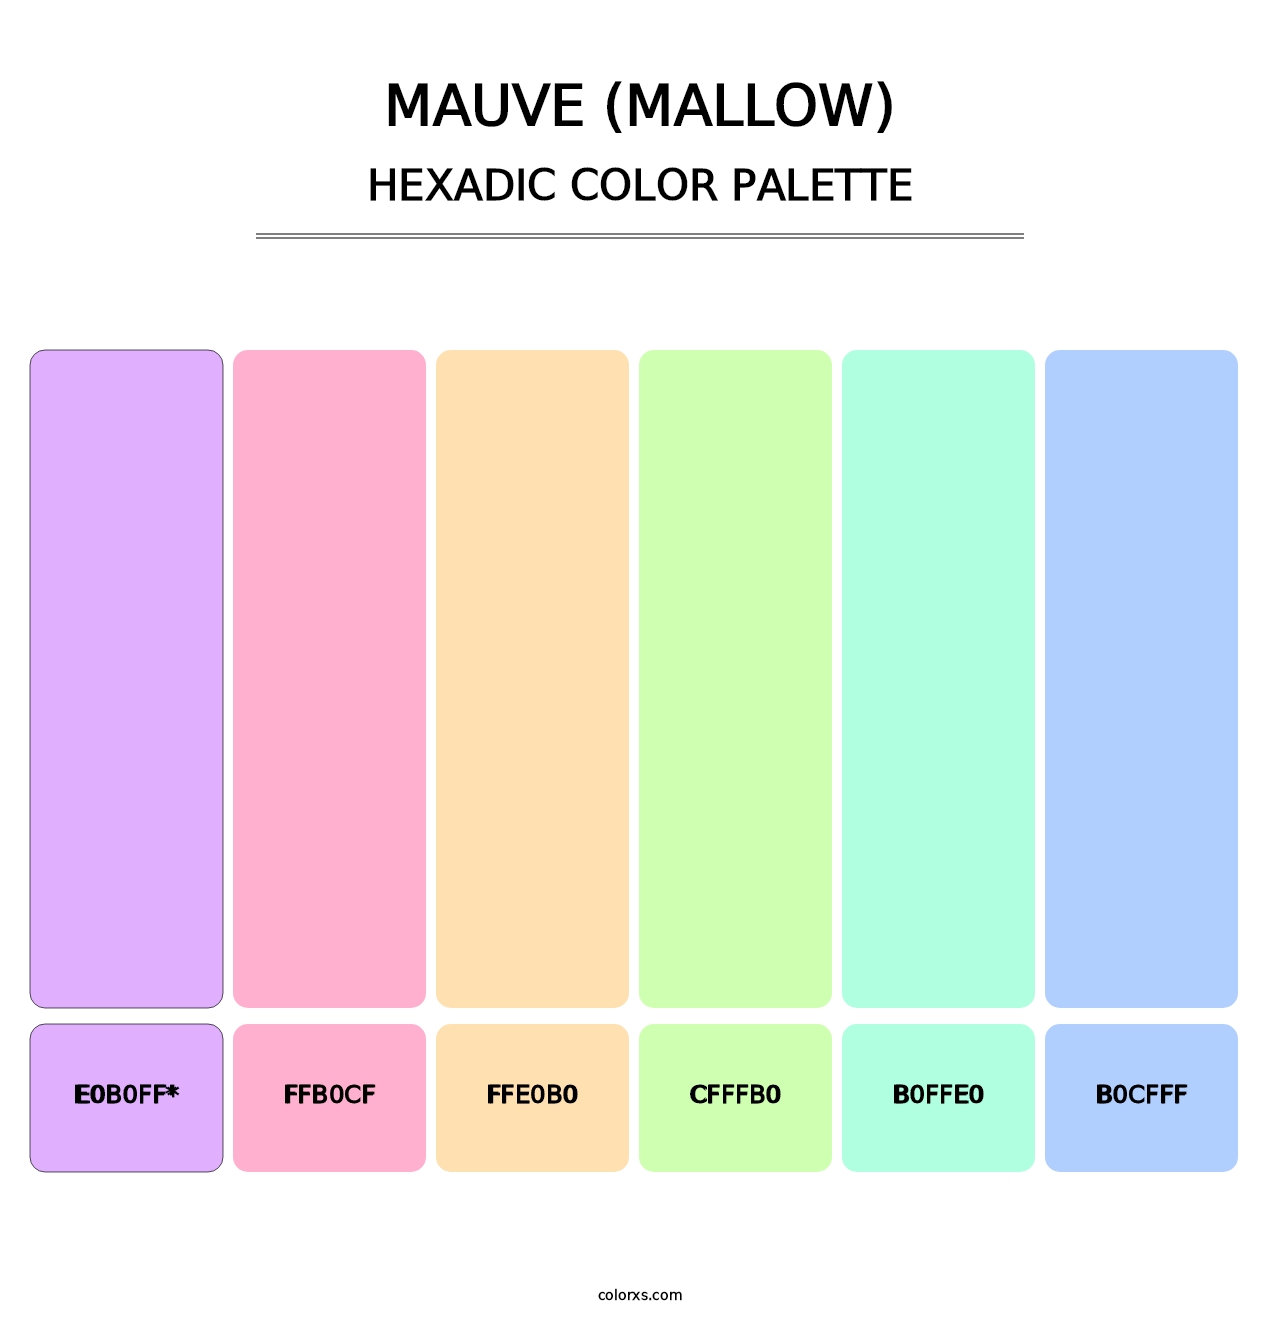 Mauve (Mallow) - Hexadic Color Palette